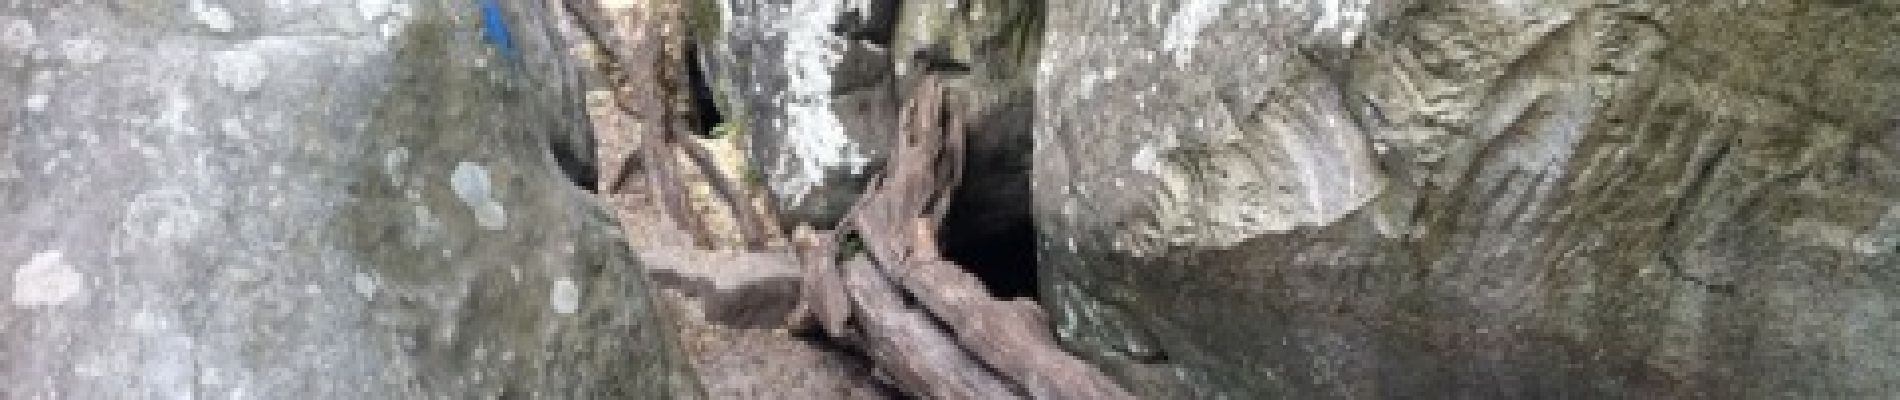 Point of interest Fontainebleau - caverne des brigands - Photo